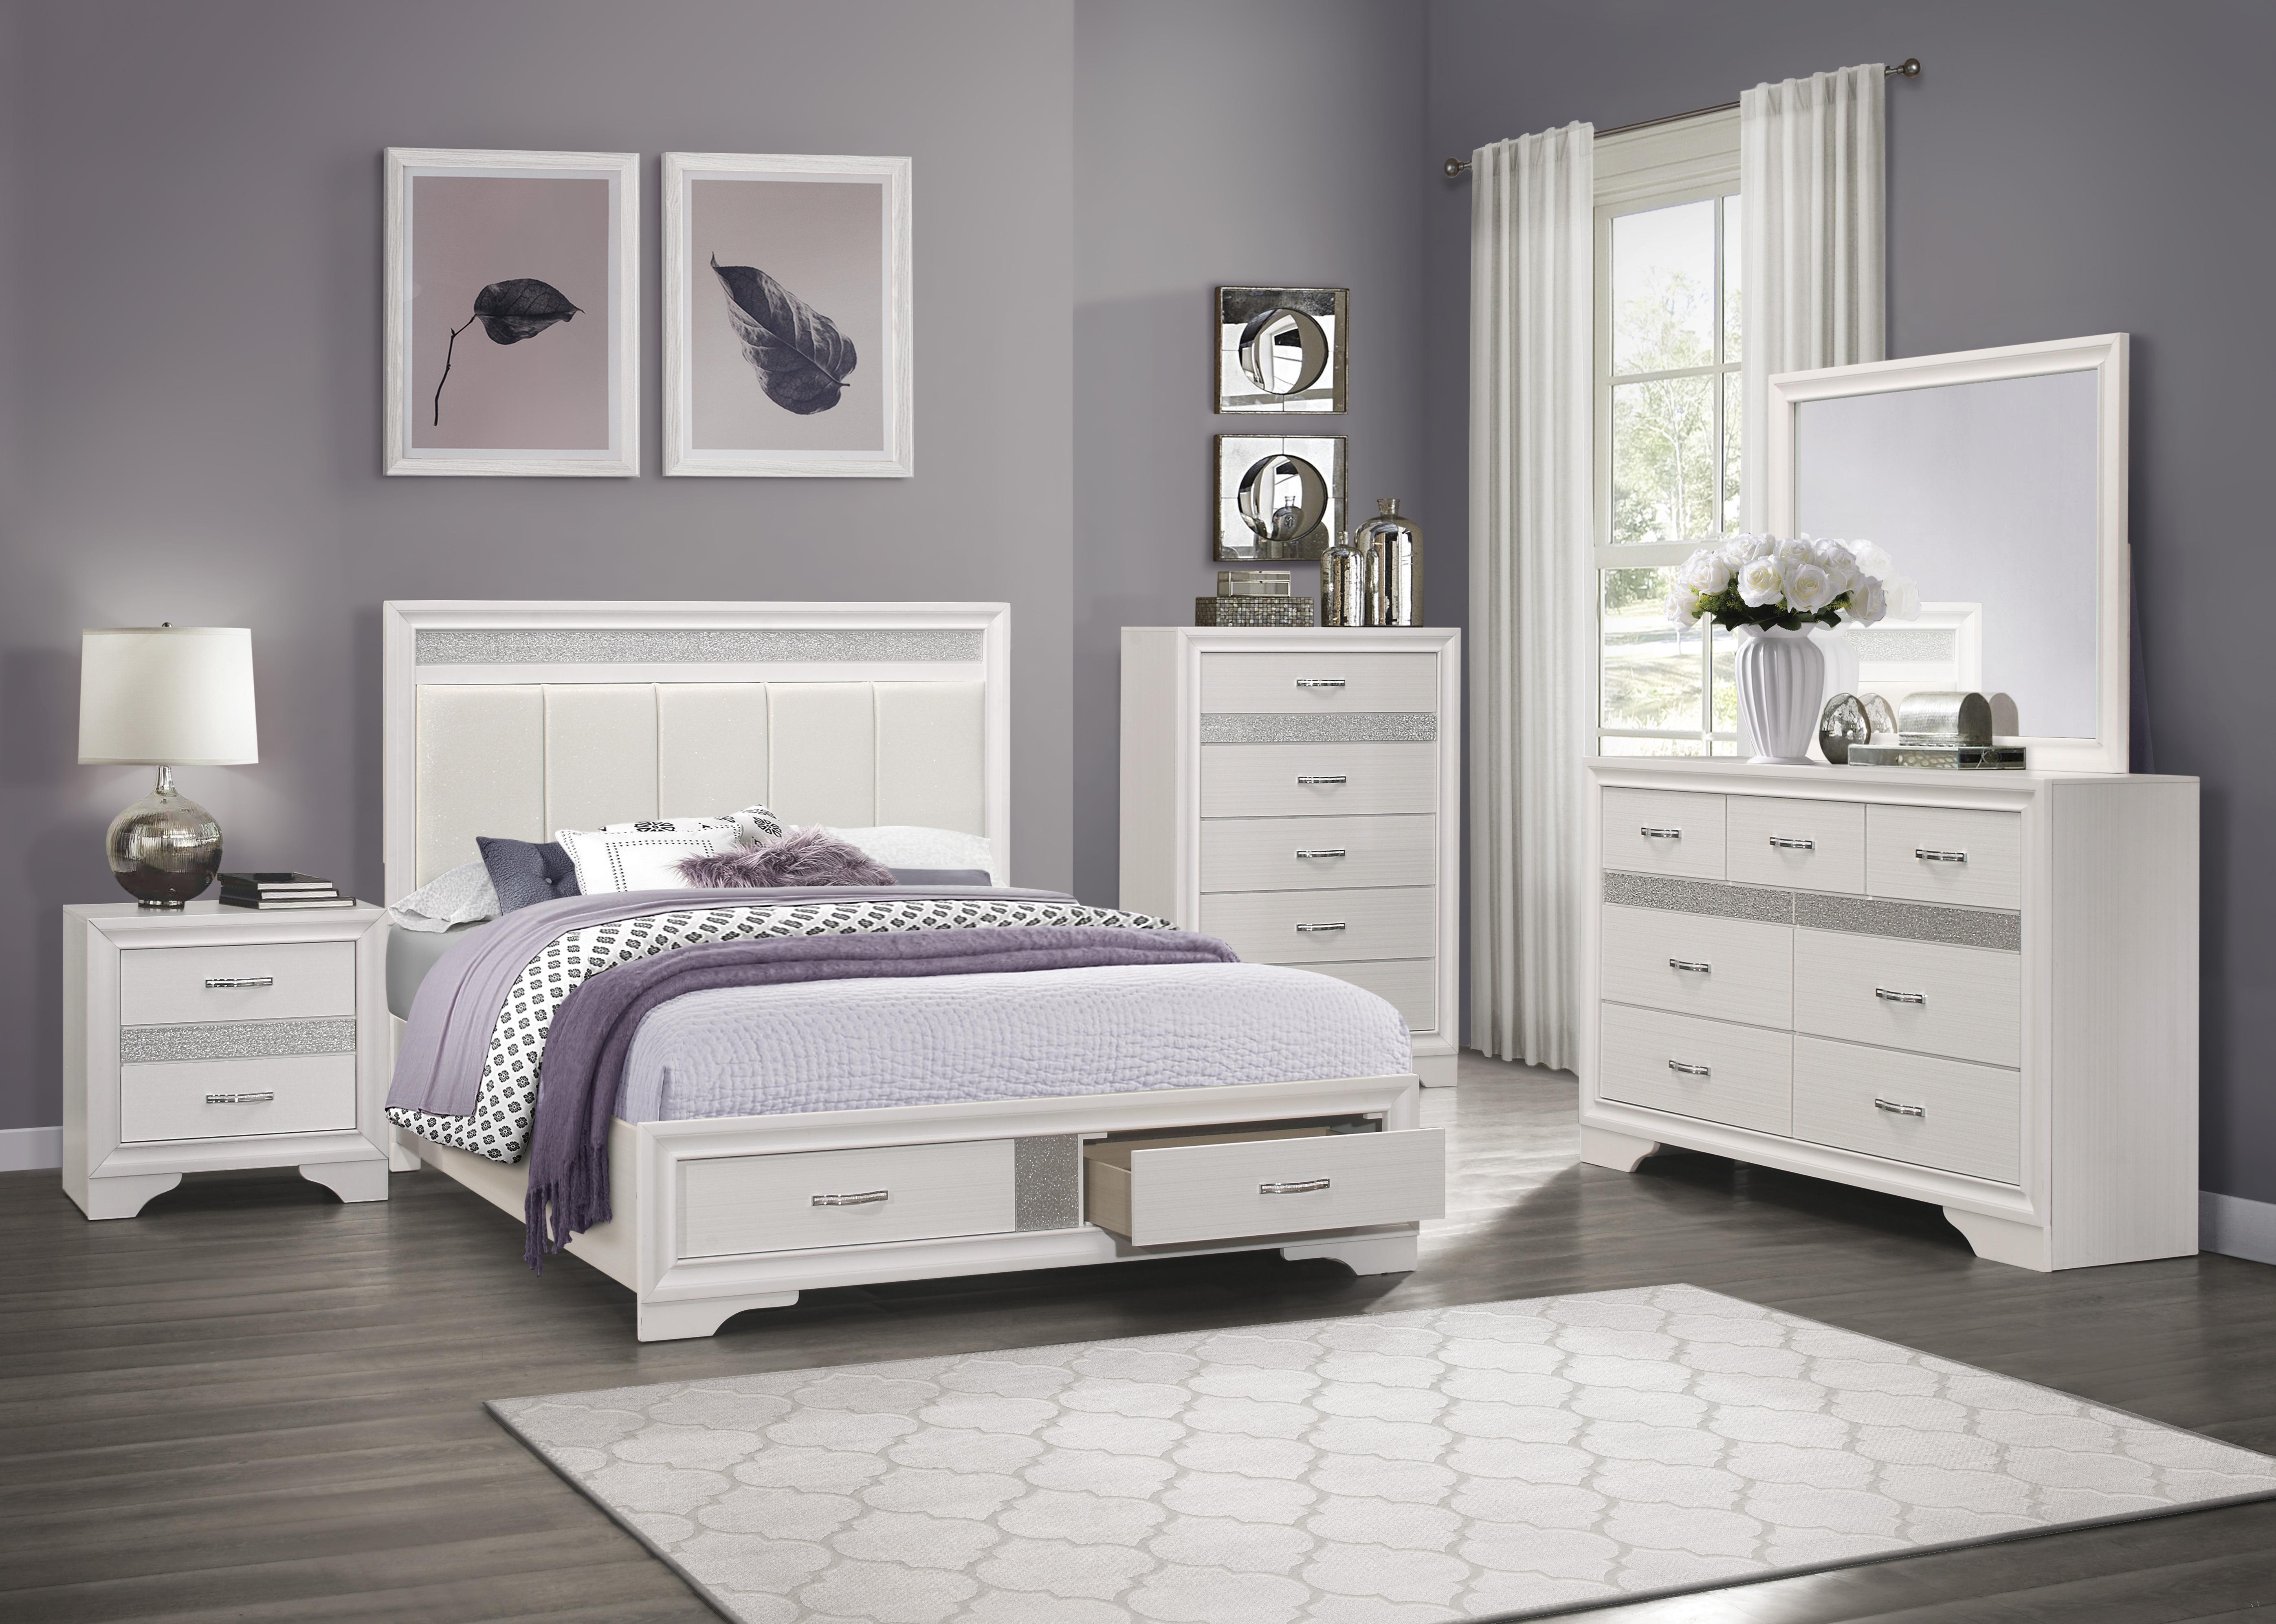 

    
Glam White & Silver Glitter Wood CAL Bedroom Set 5pcs Homelegance 1505WK-1CK* Luster
